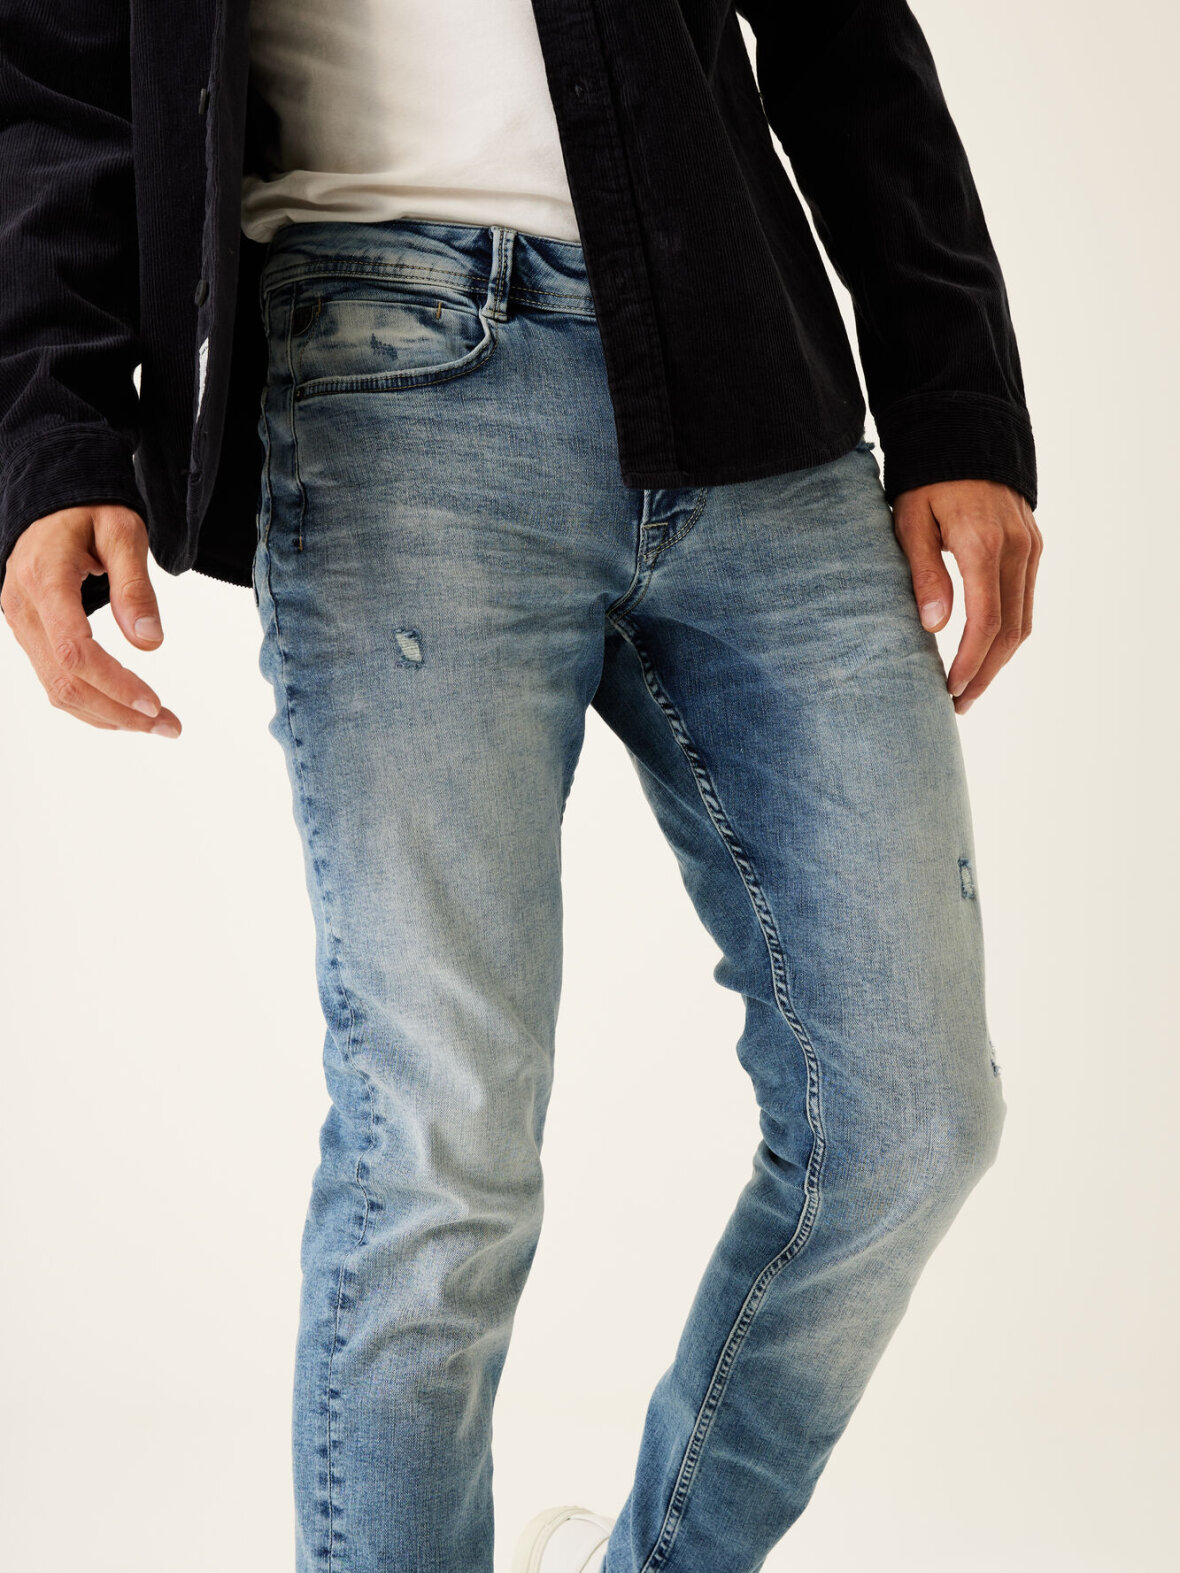 flydende Måne Vejrtrækning Nørrebro Randers - Herre - Jeans - Garcia - Rocko Slim Fit Jeans